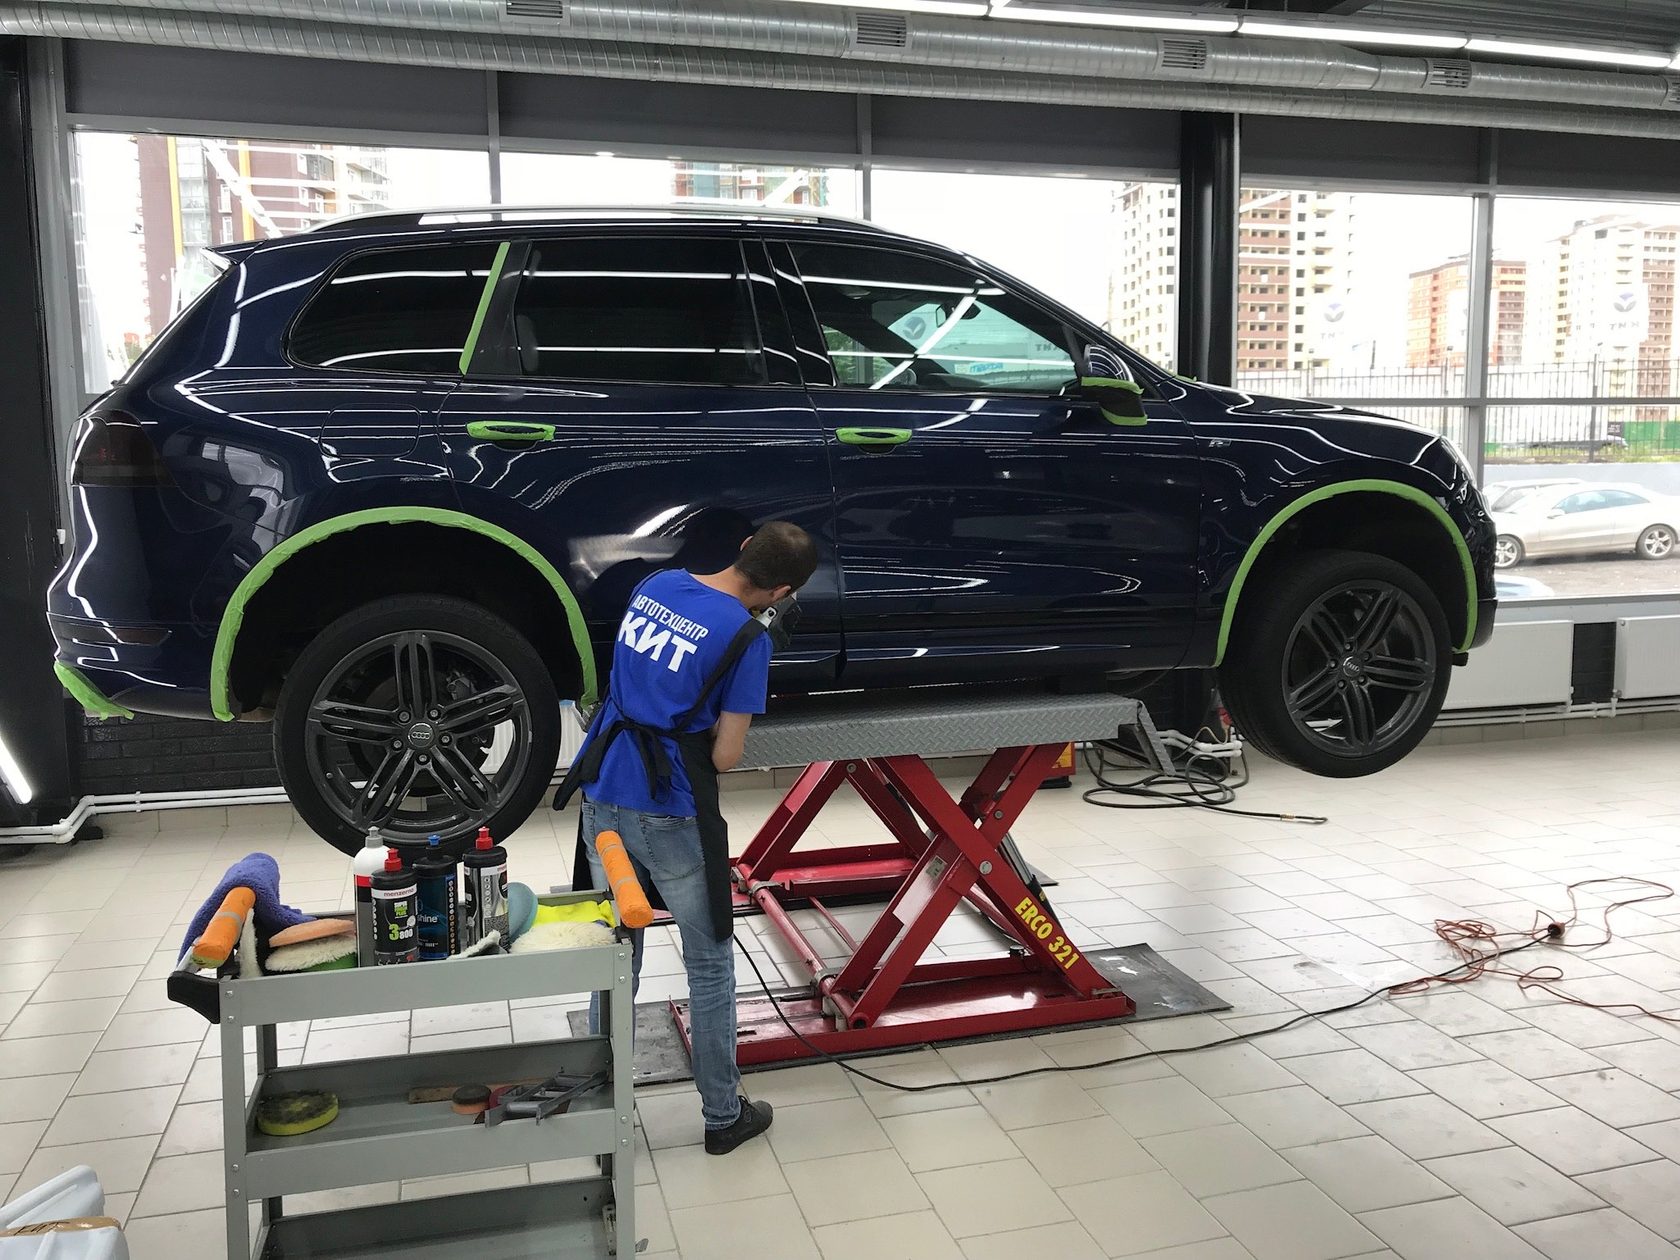 ОКавтосервис: ремонт легковых автомобилей и коммерческого транспорта в Ижевске